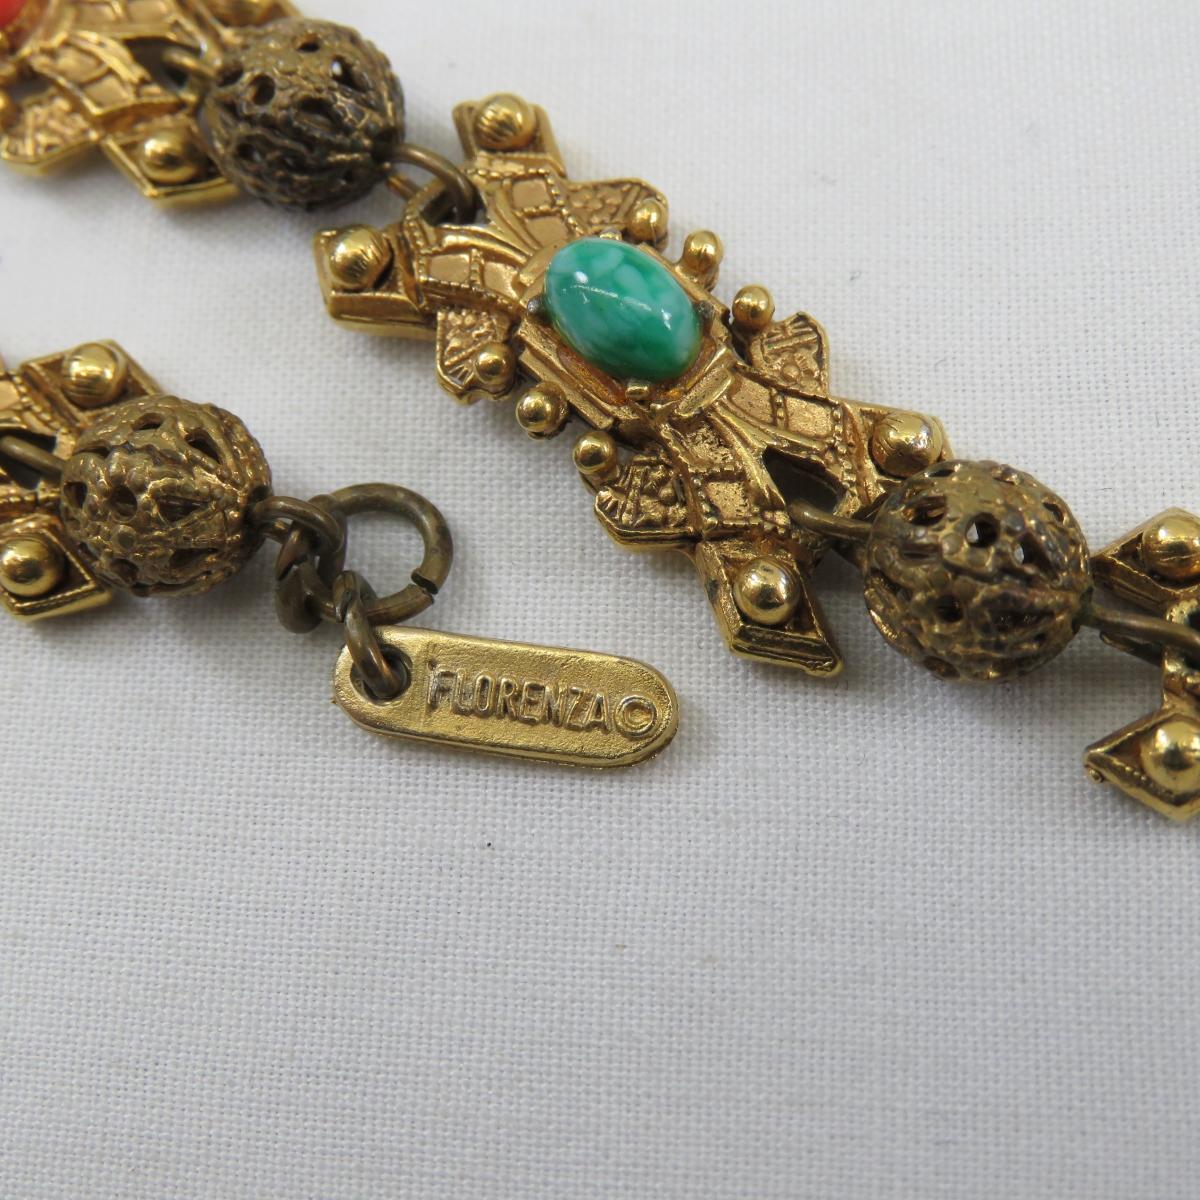 Vintage Florenza Wear & Repair Jewelry